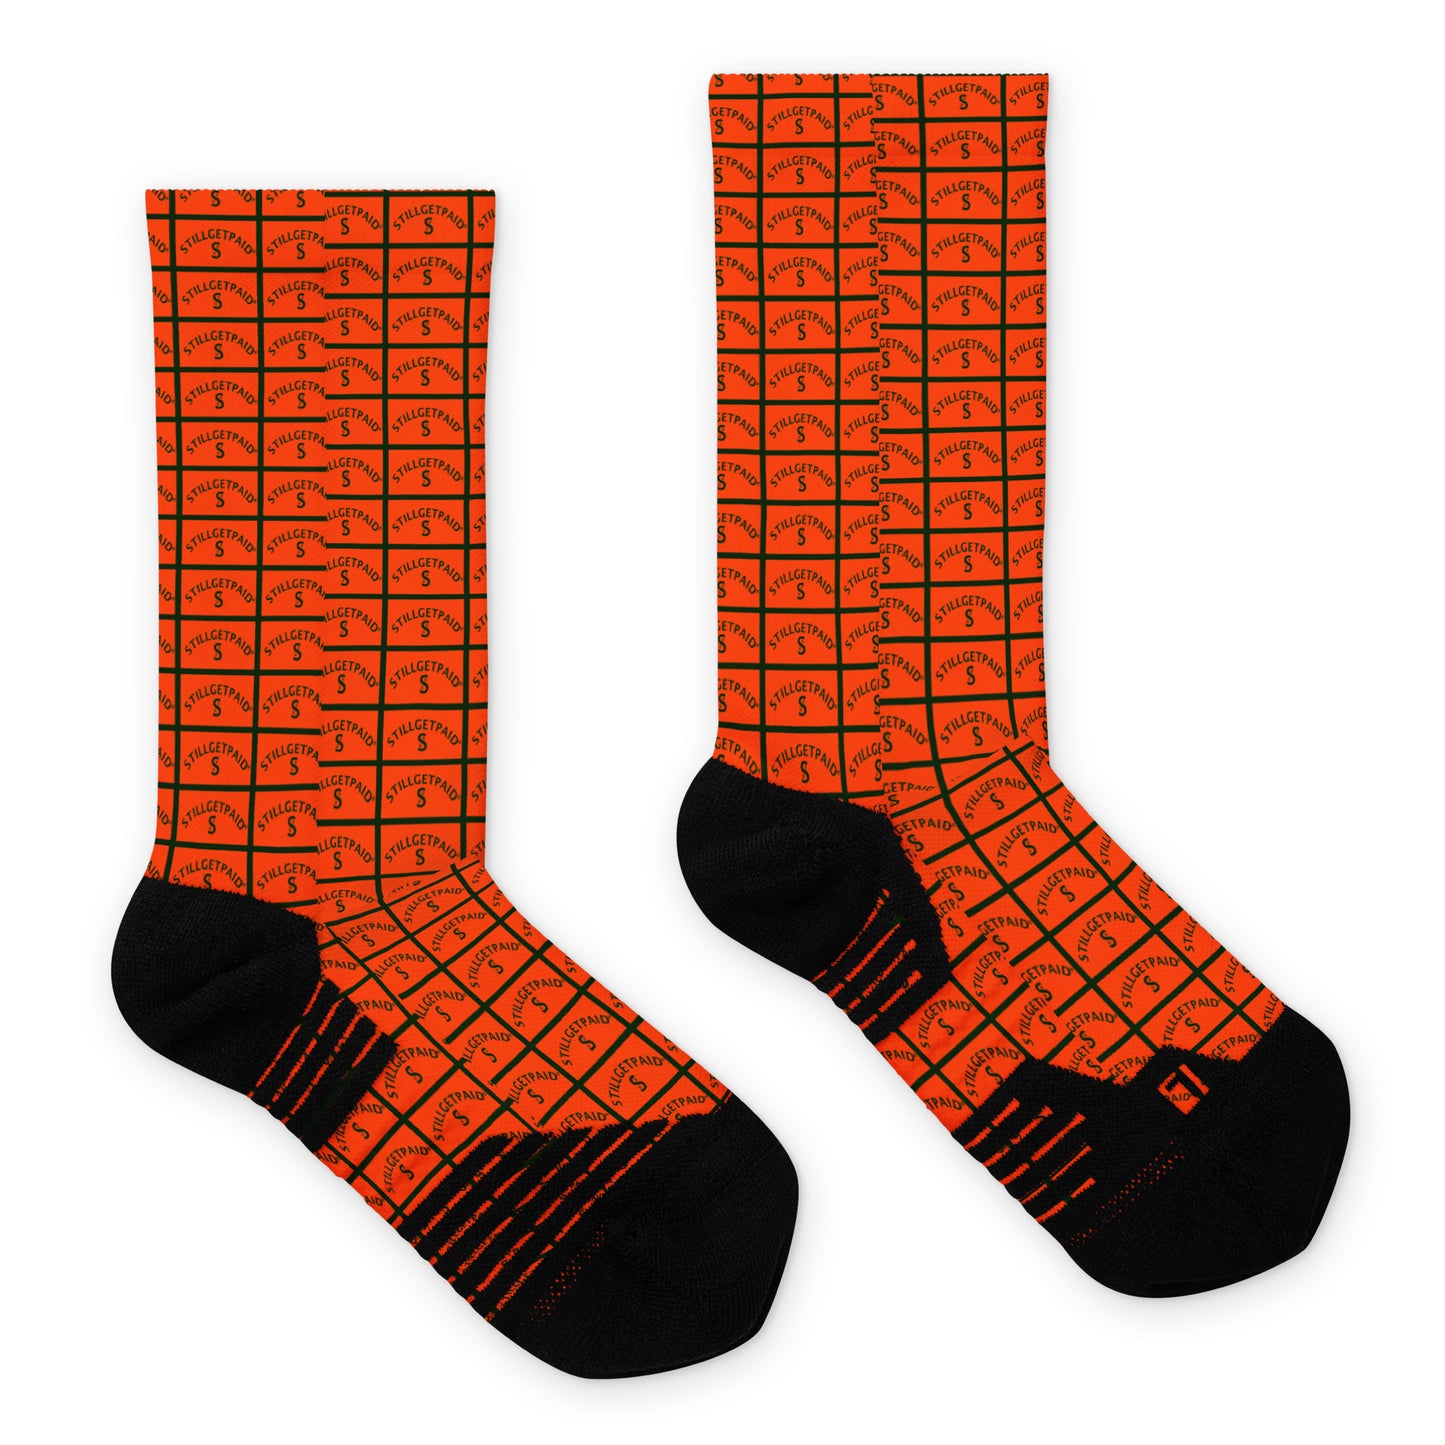 STILLGETPAID® APPAREL Basketball socks